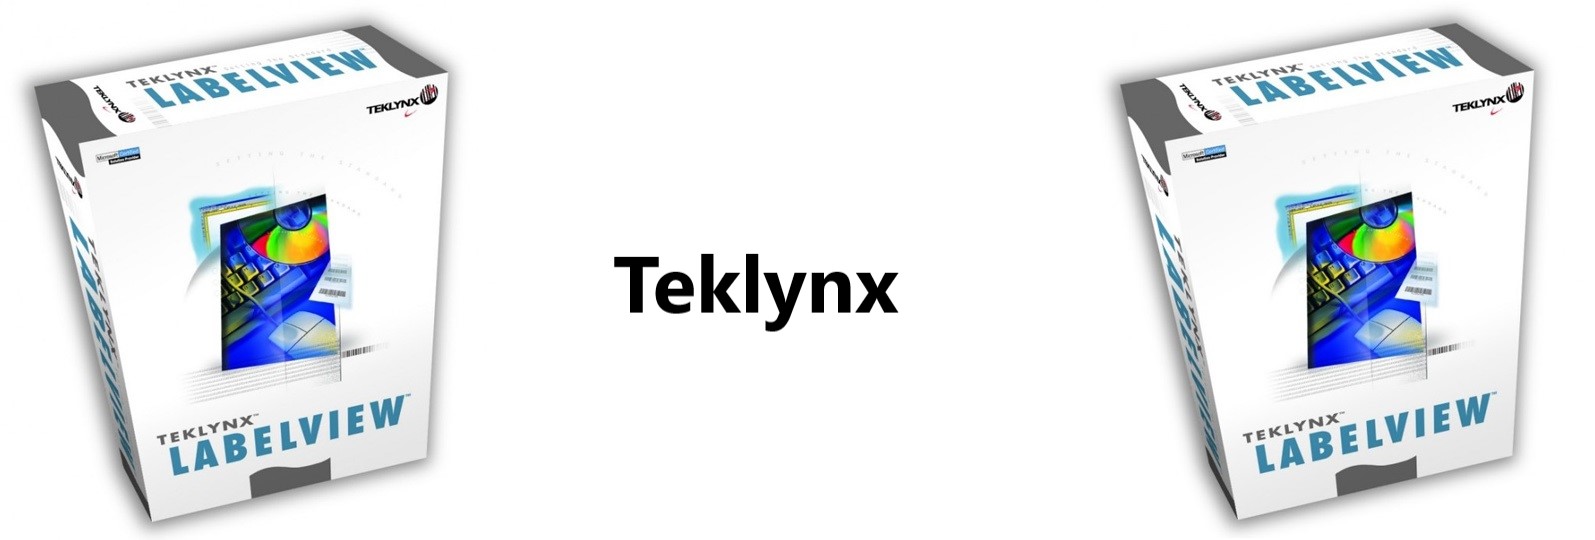 Teklynx Labelview